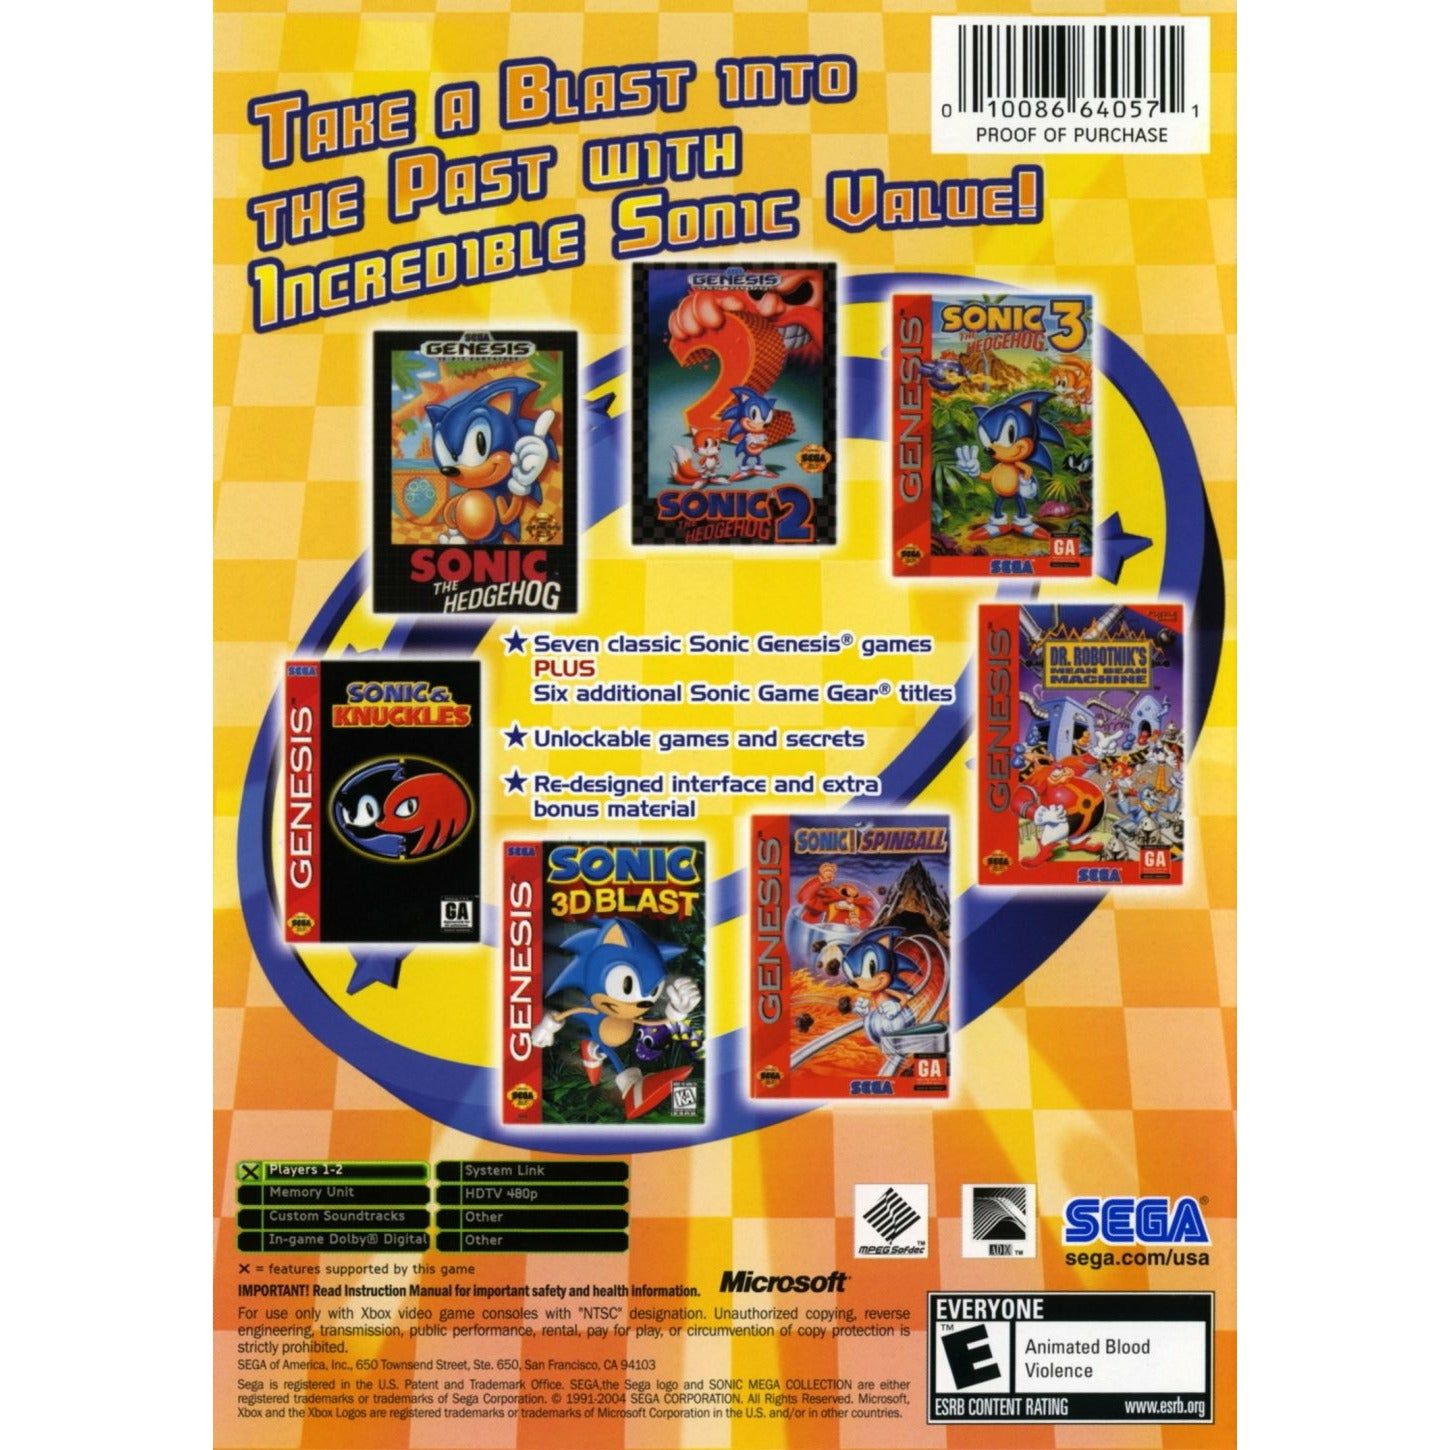 XBOX - Sonic Méga Collection Plus